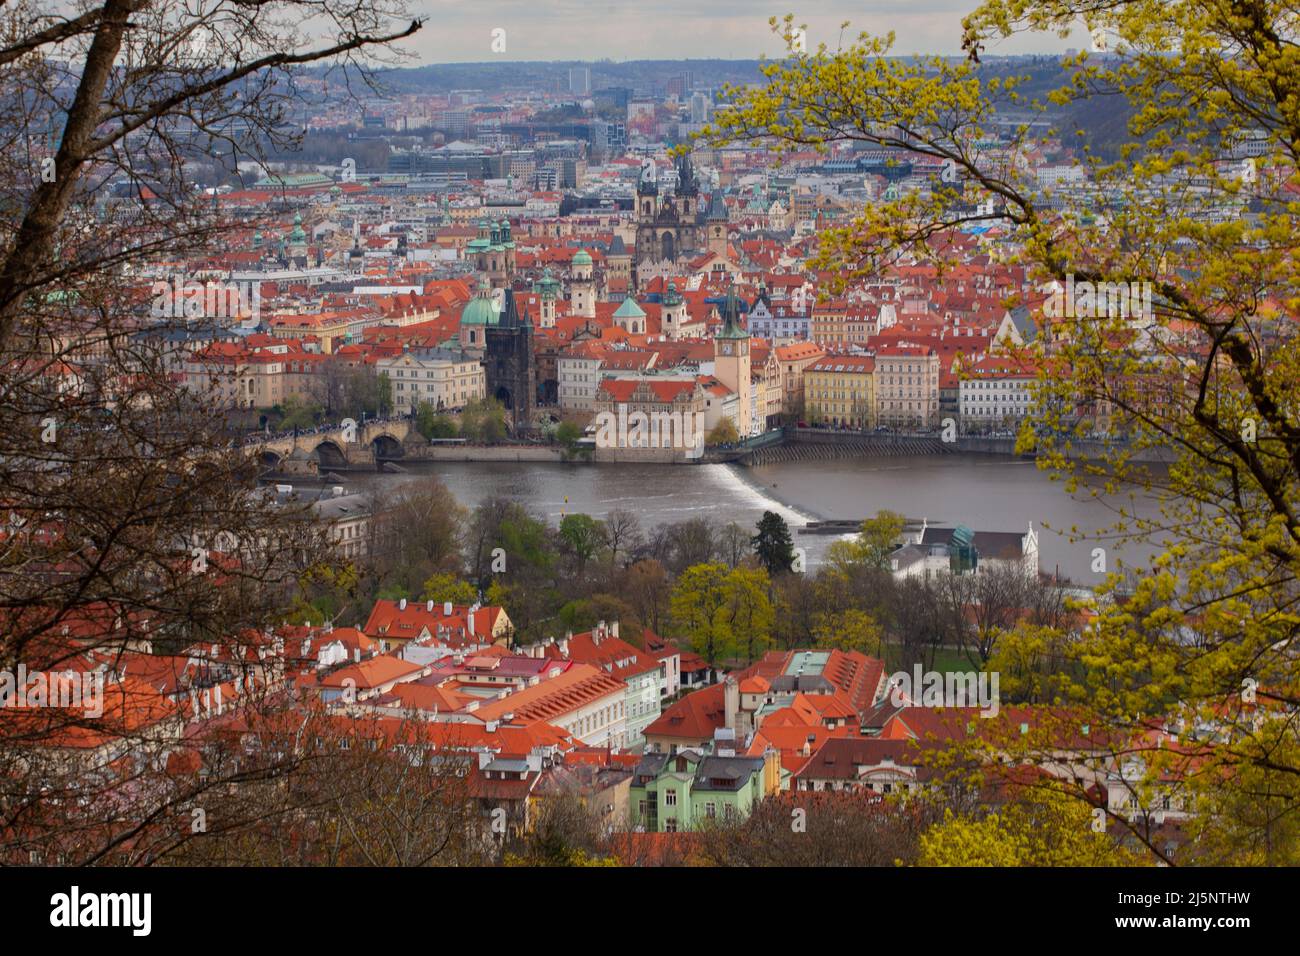 Vista su alberi del centro storico di Praga con Ponte Carlo, chiese e cattedrali, tetti rossi. Foto Stock